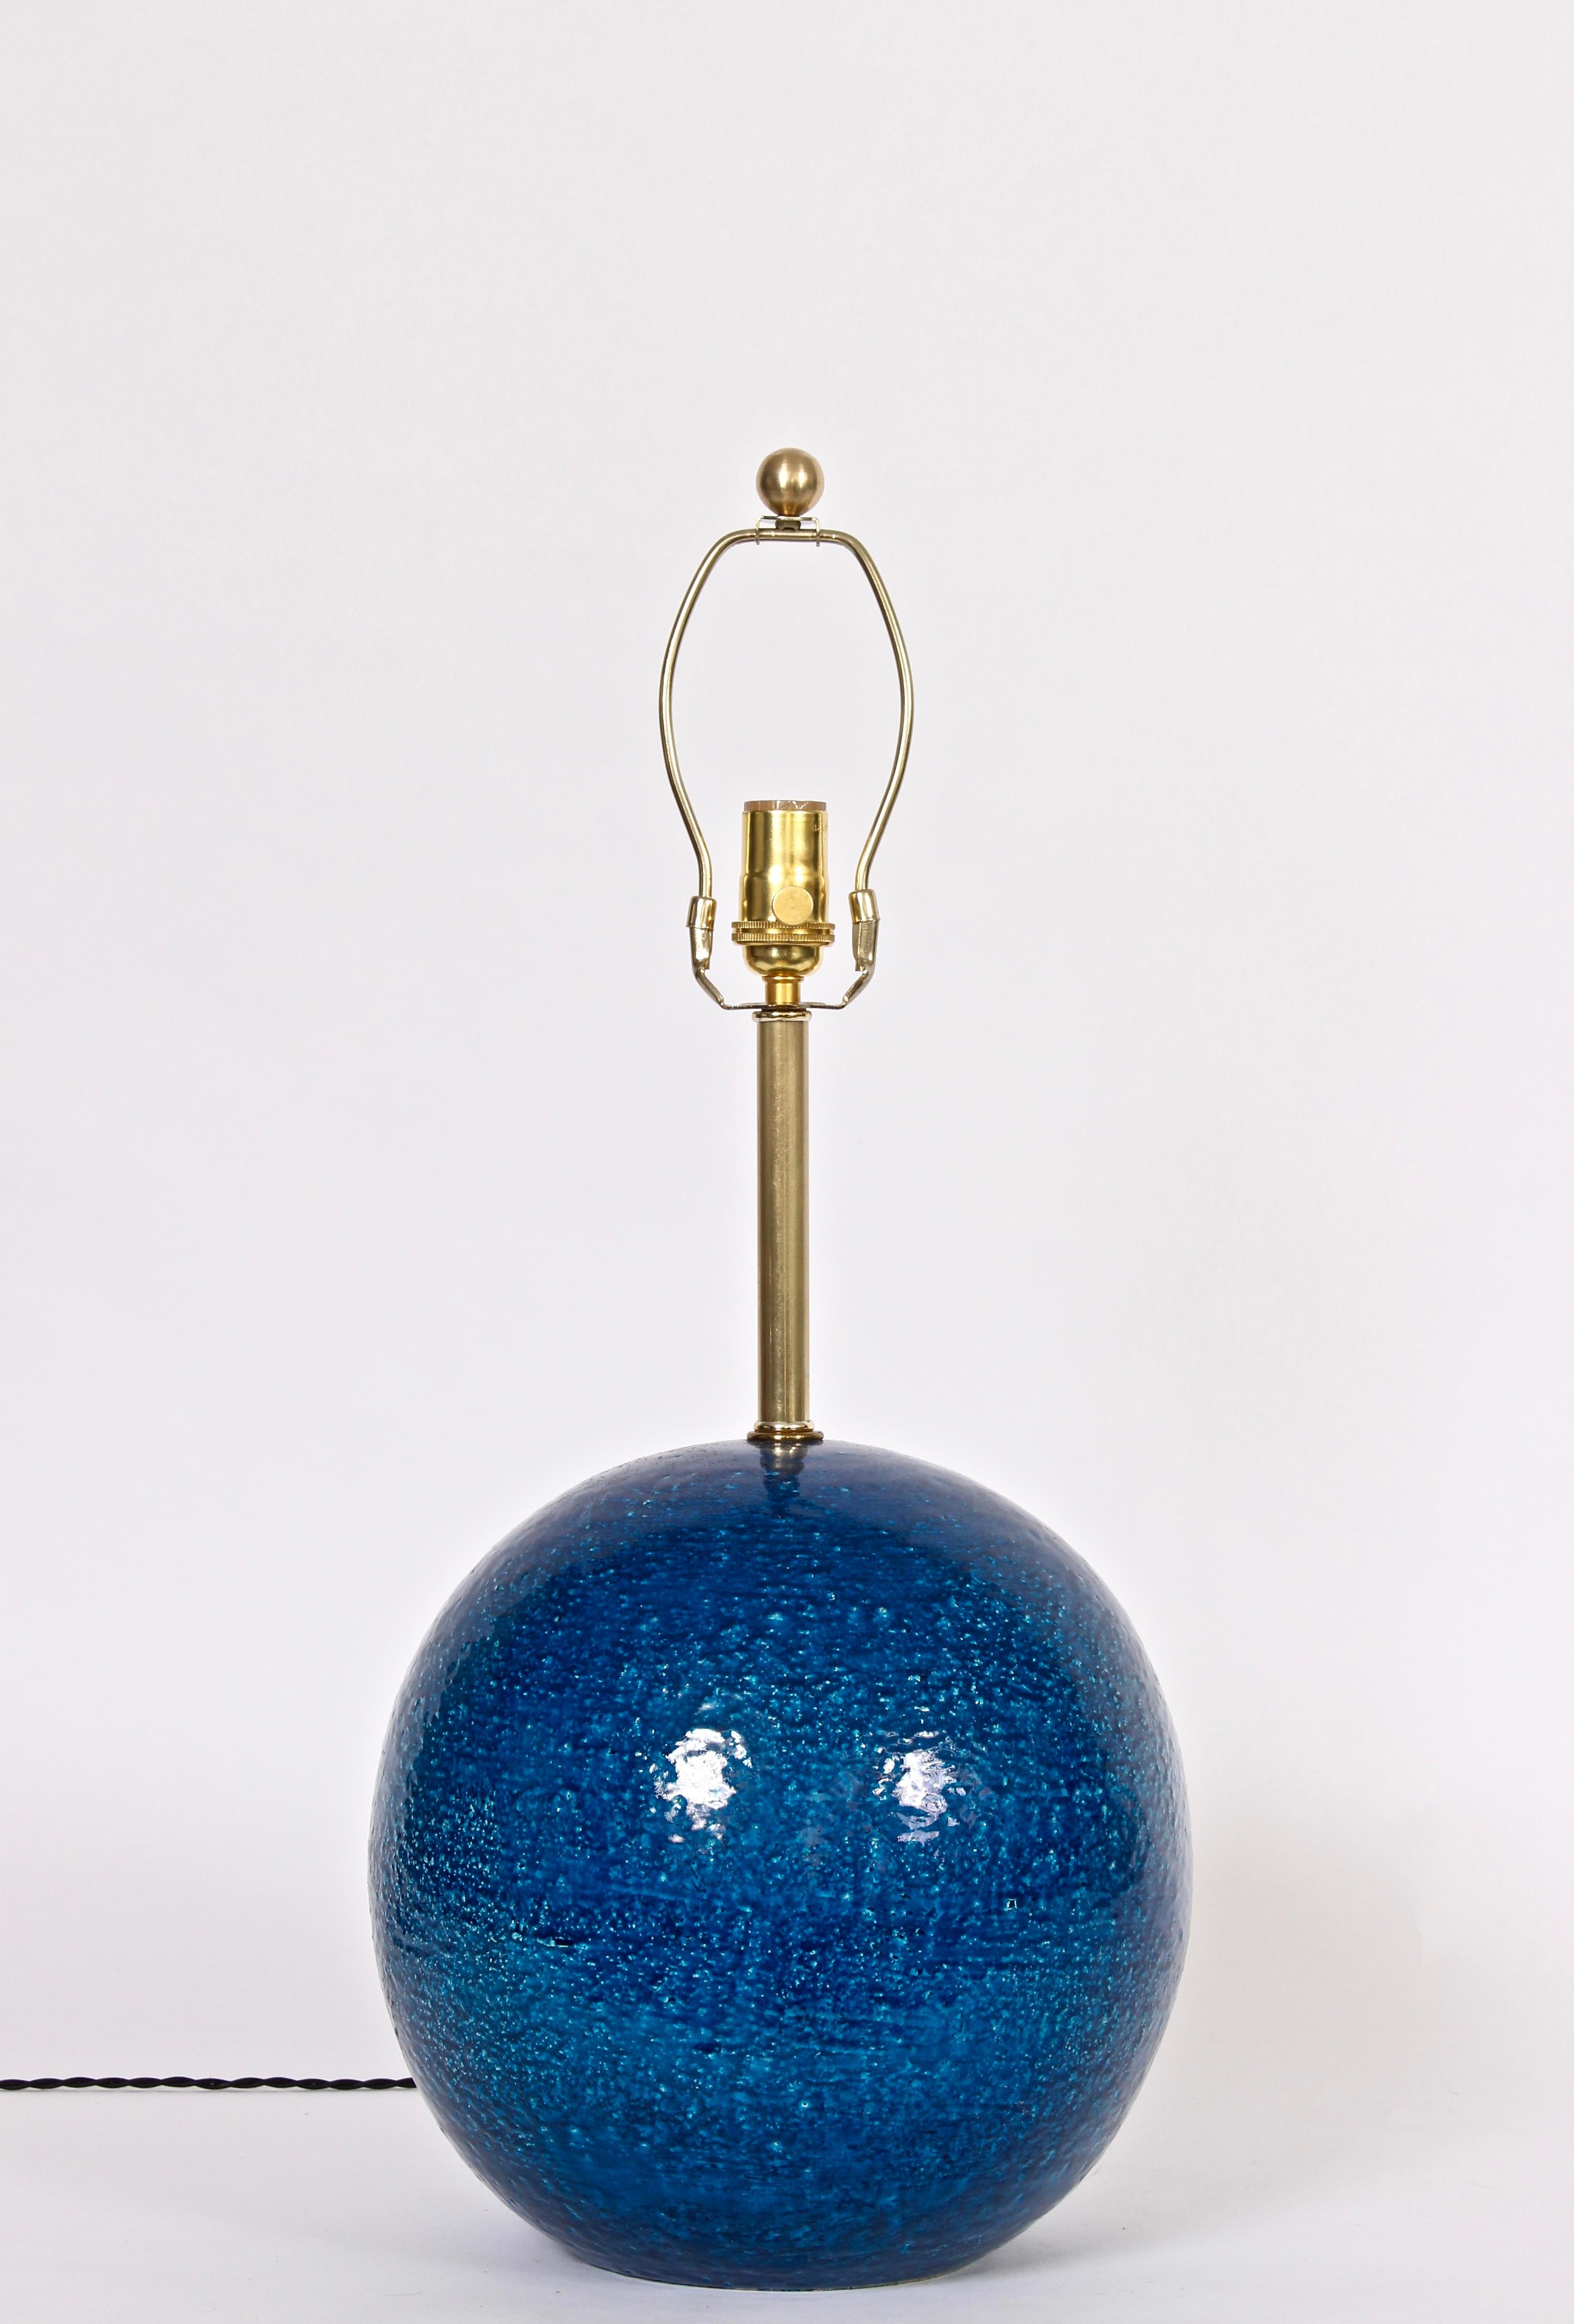 Lampe à poser moderne Aldo Londi pour Bitossi, globe texturé bleu cobalt. La forme grossière de la boule est faite à la main, avec une coloration bleu royal brillante et une glaçure réfléchissante. Distribué par Raymor. L'abat-jour est présenté à